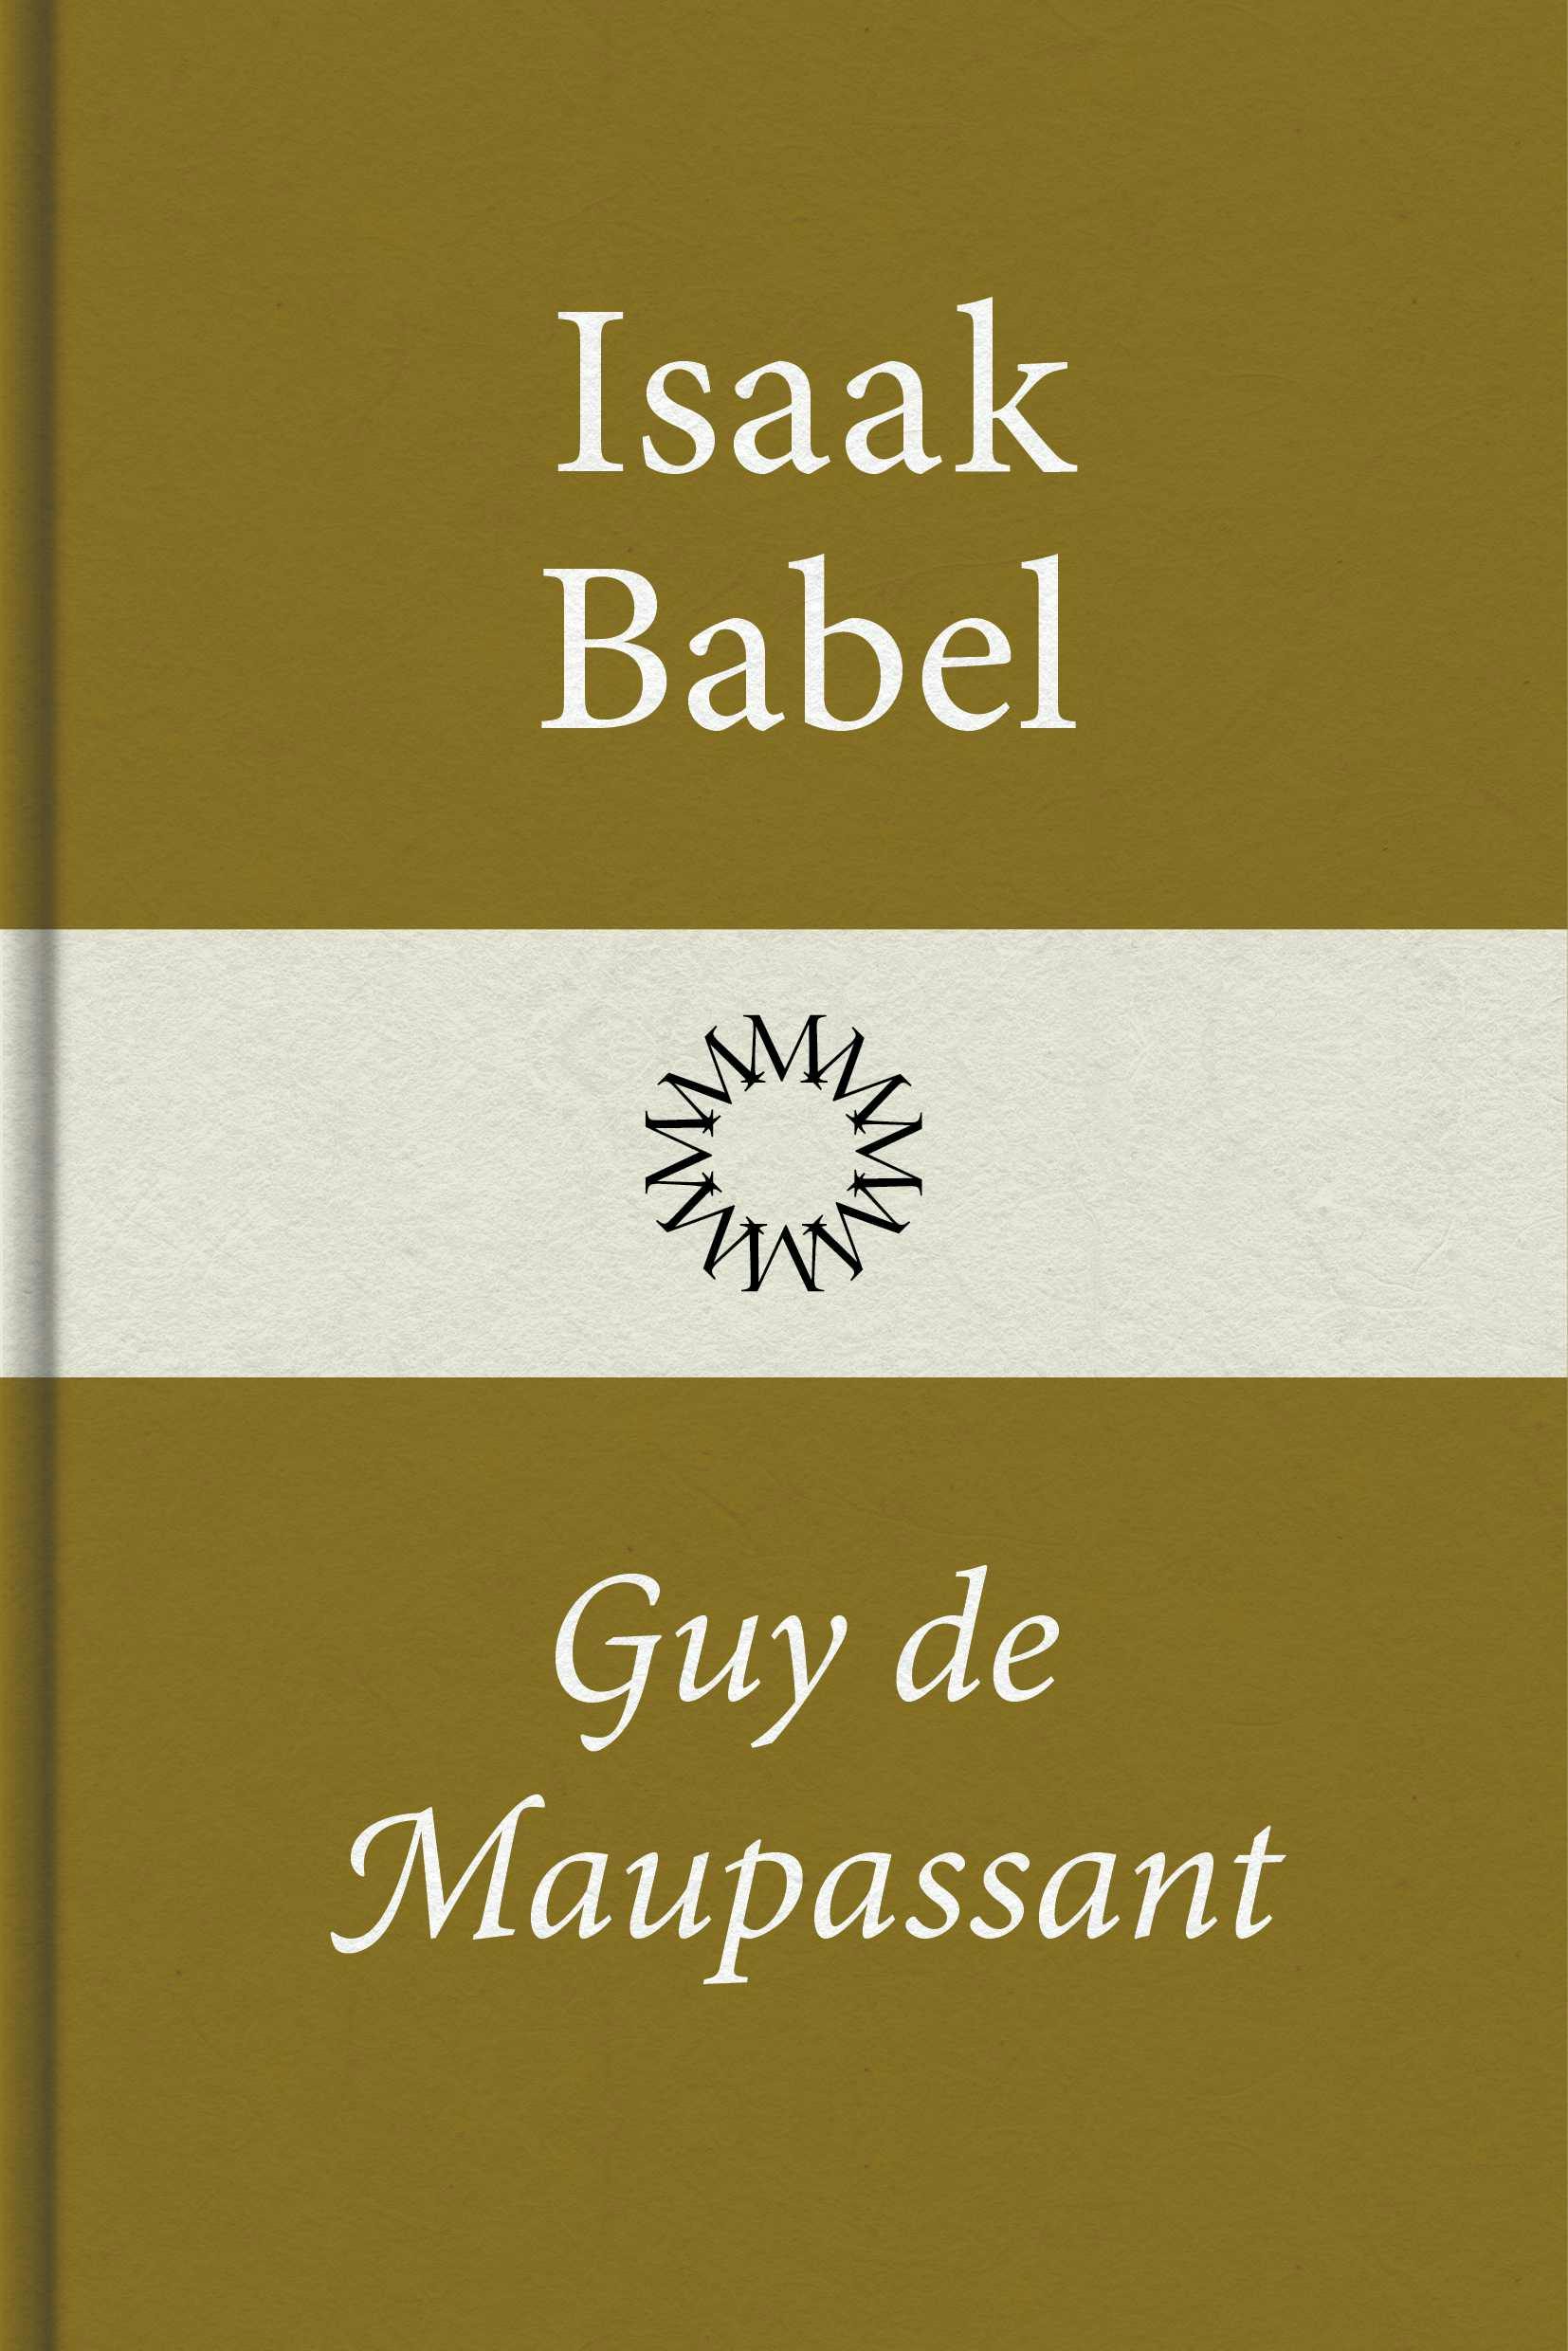 Guy de Maupassant - Isaak Babel